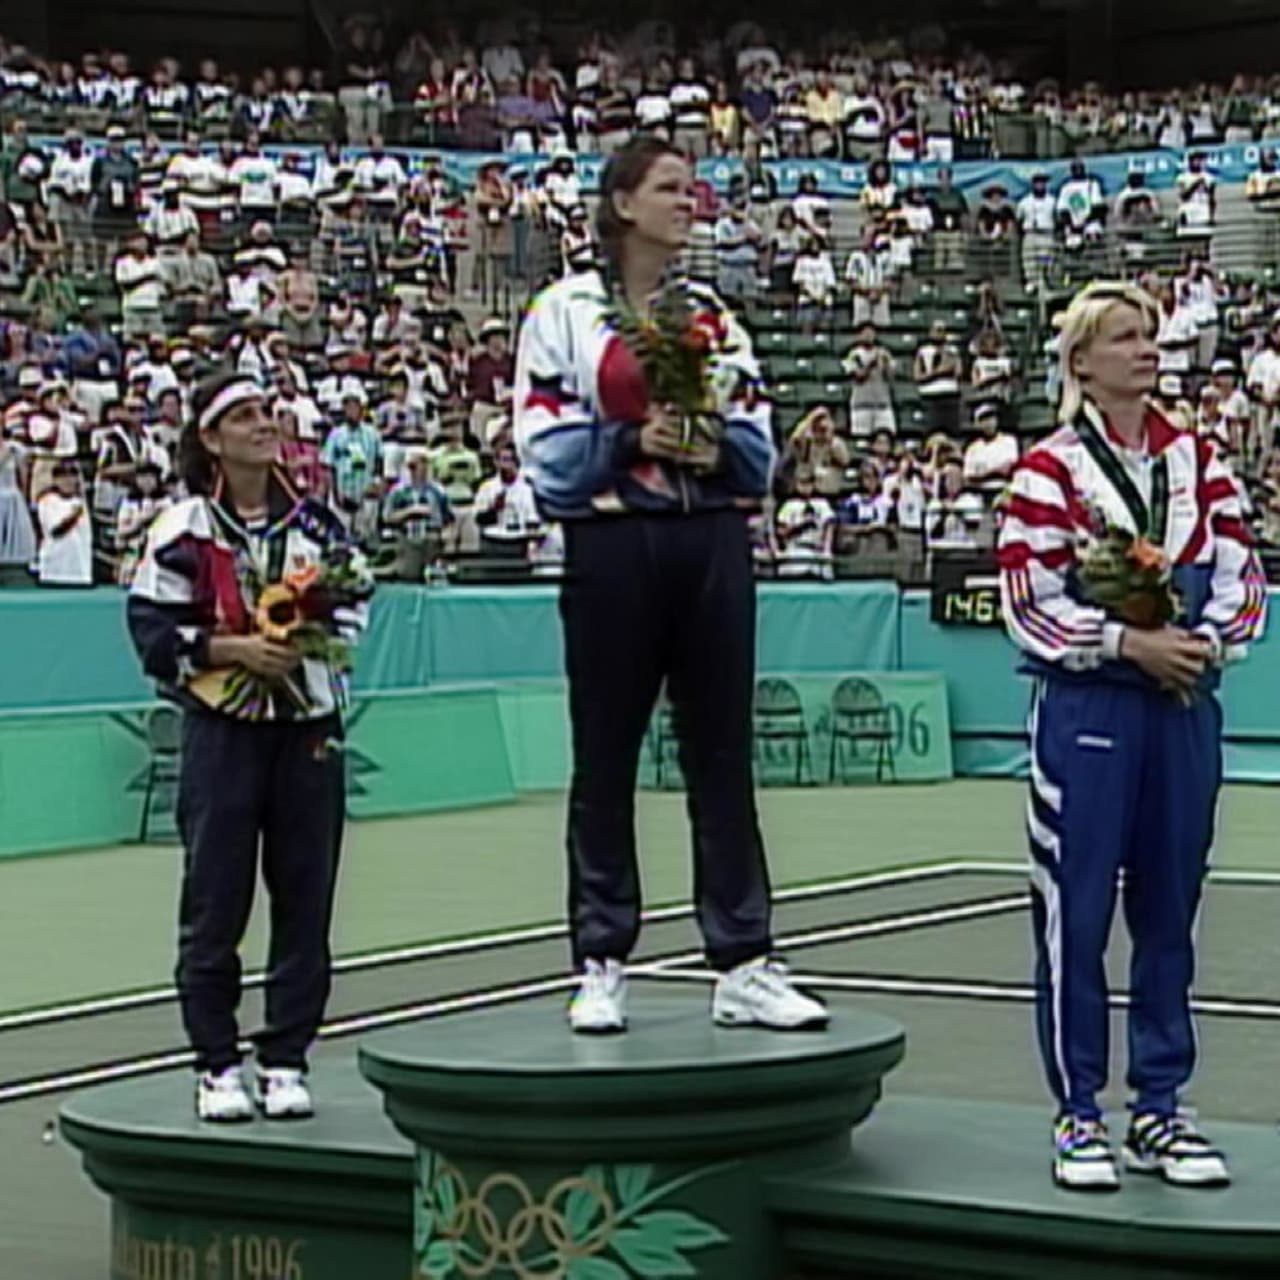 女子シングルス決勝 アトランタ1996リプレイ